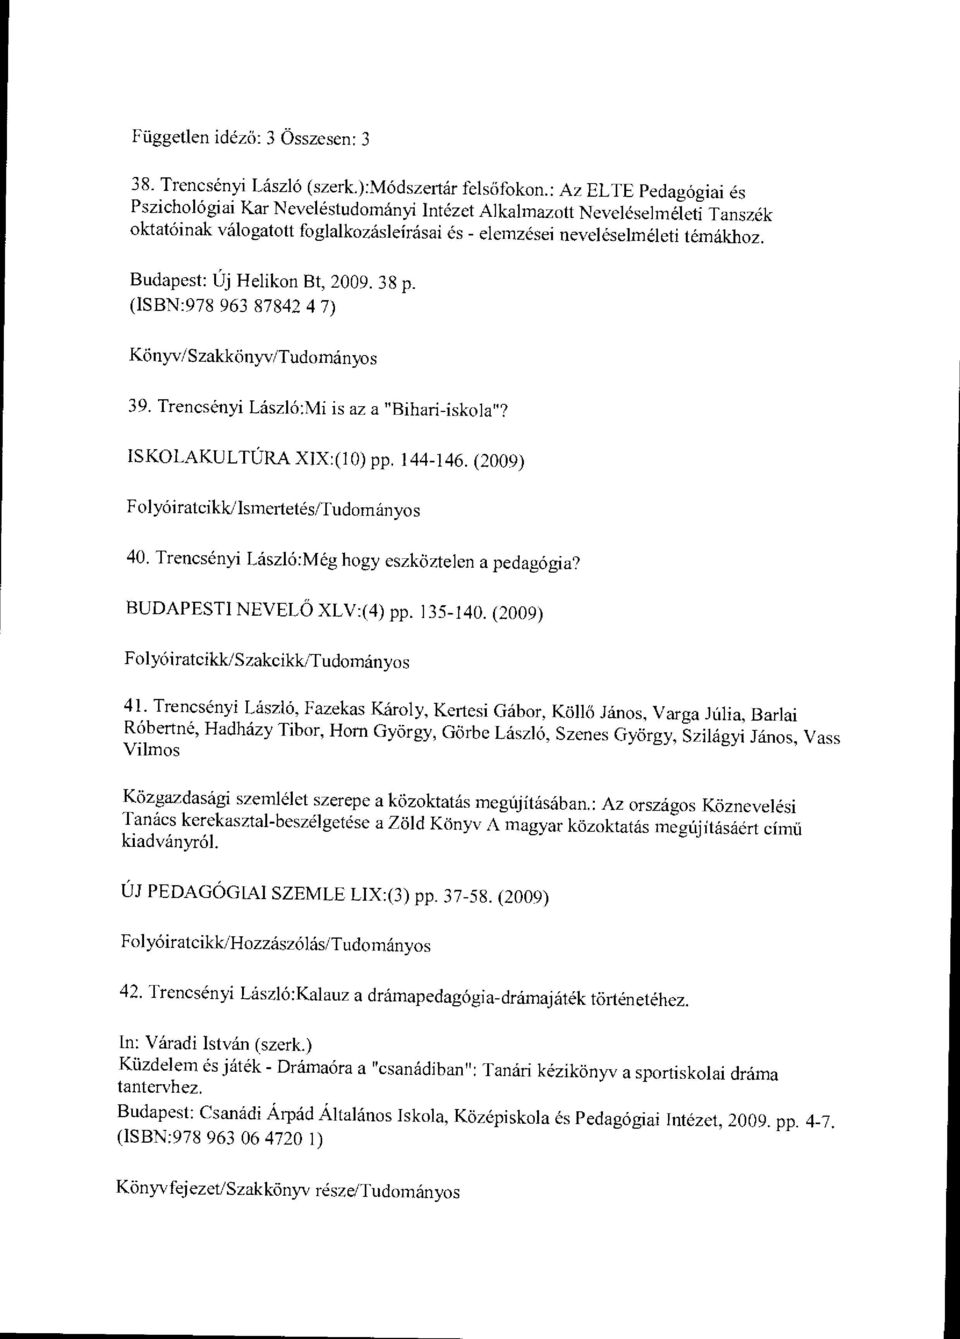 Budapest: Új Helikon Bt, 2009. 38 p. (ISBN:978 963 87842 4 7) Könyv/Szakkönyv/Tudományos 39. Trencsényi László:Mi is az a "Bihari-iskola"? ISKOLAKULTÚRA XIX:(10) pp. 144-146. (2009) 40.